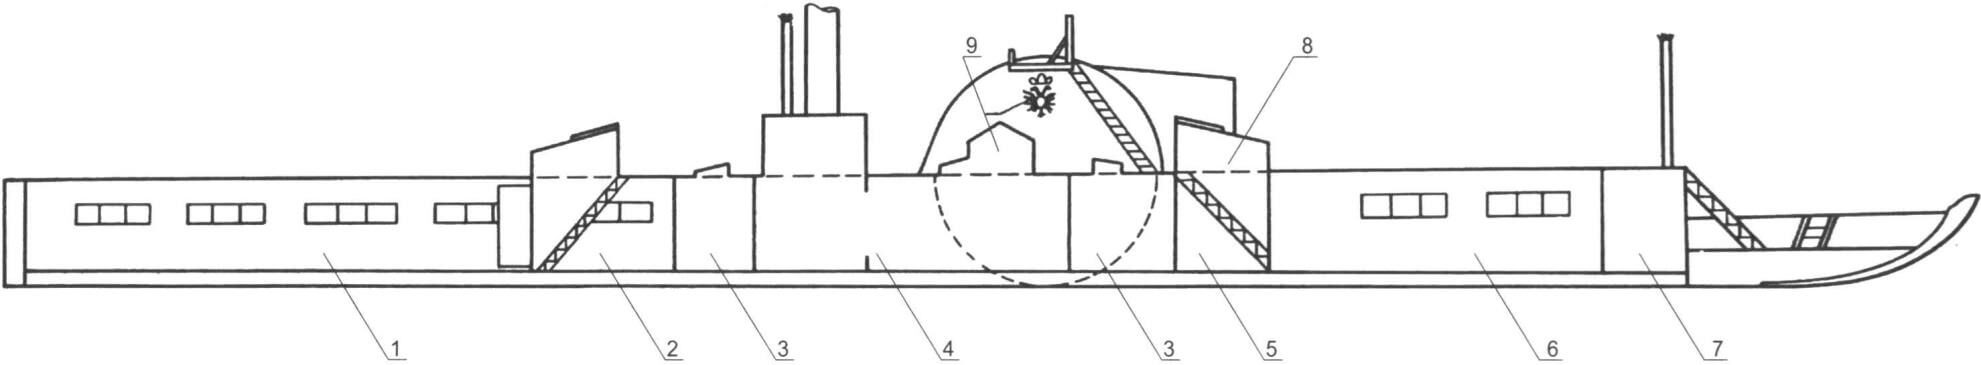 Компоновочная схема судна